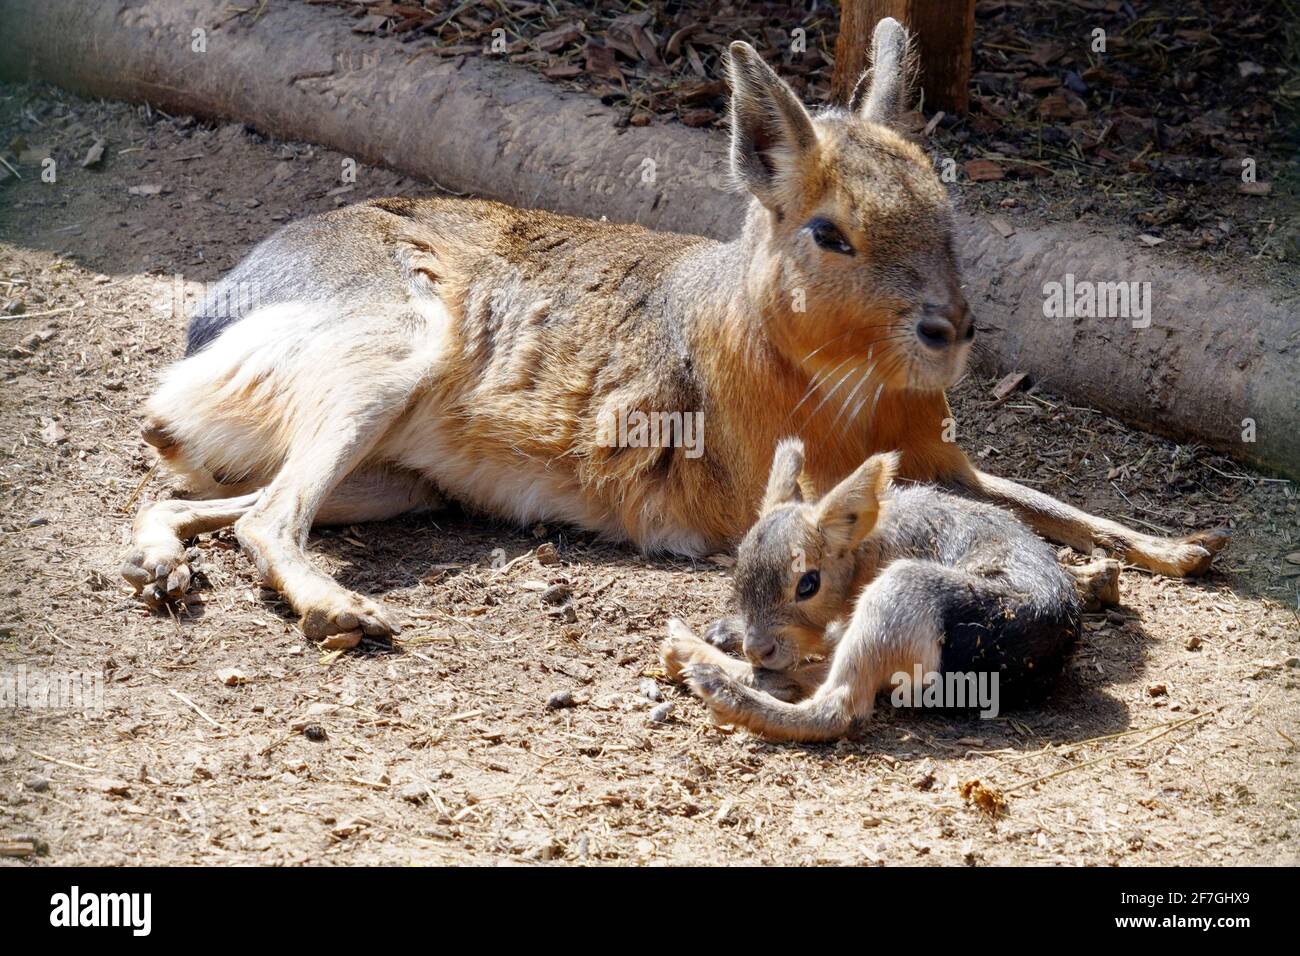 Patagonian mara mit seinem Baby Tier in der Sonne. Ein Hasen-ähnlicher pflanzenfressender Nager, lateinisch Dolichotus patagonum genannt, mit seinen Jungen. Stockfoto